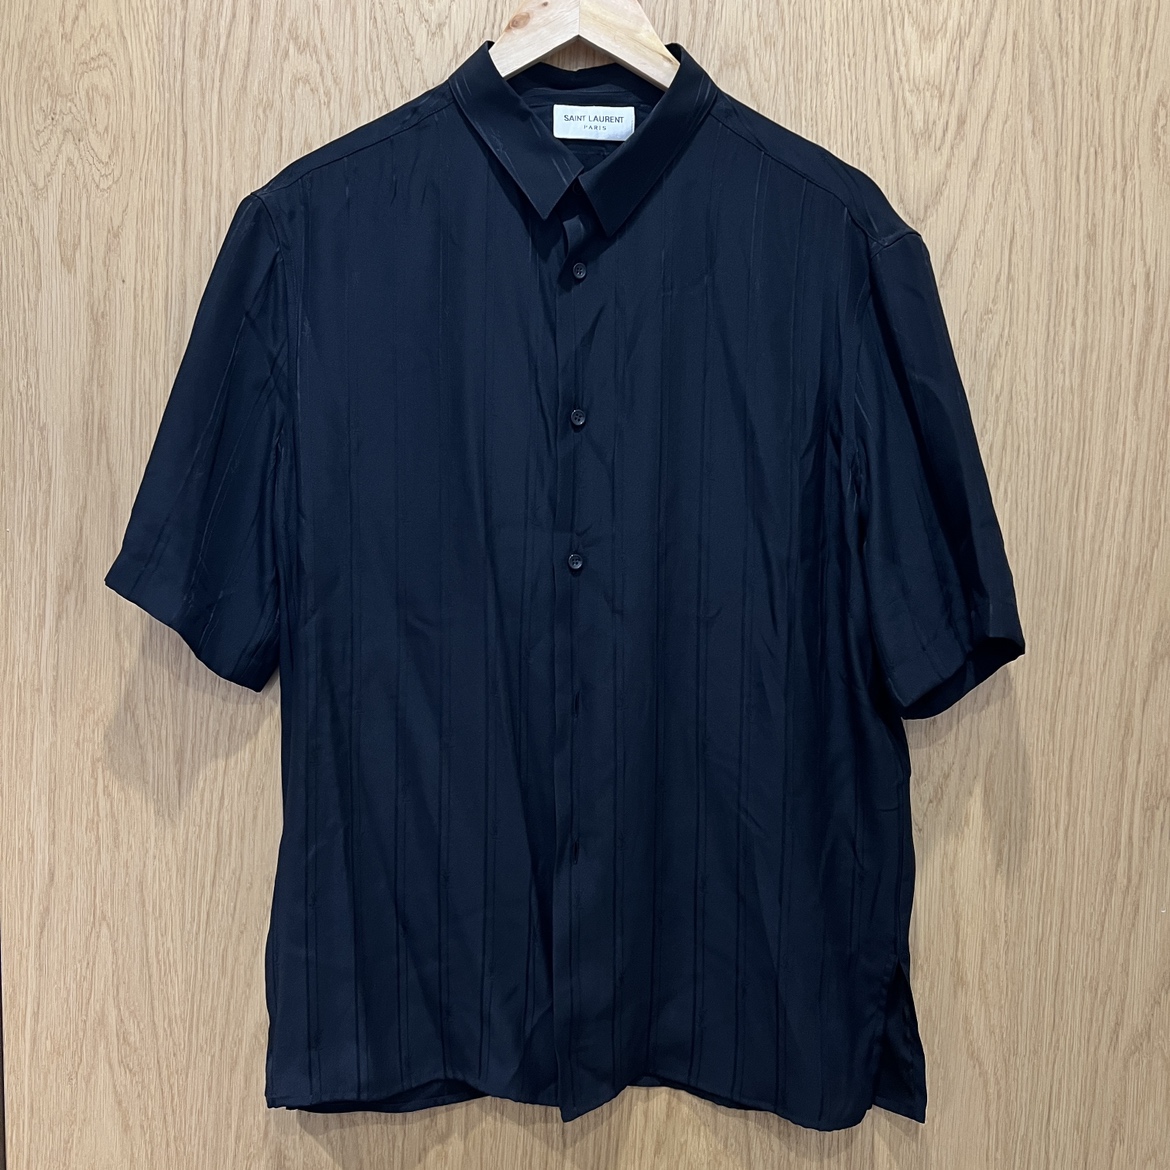 サンローランの23SS ブラック 601070 YSL 半袖開襟シャツの買取実績です。